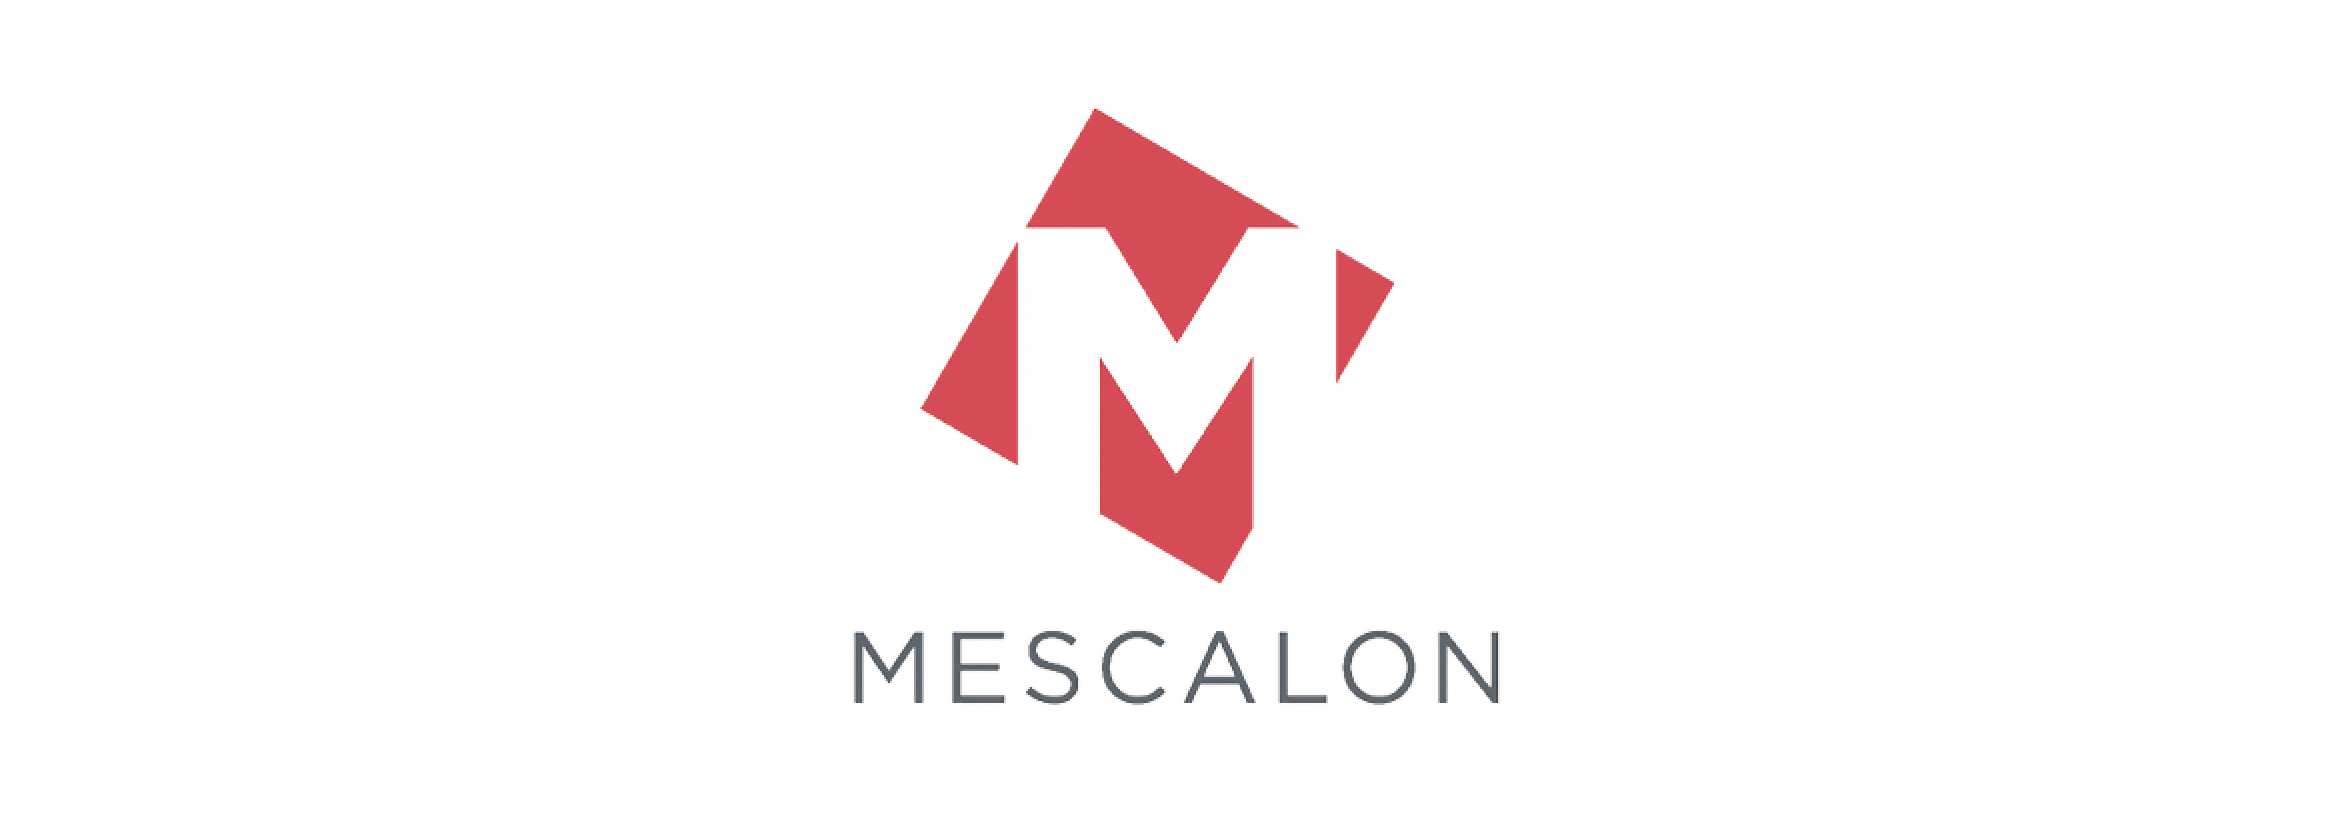 Logo for Mescalon.